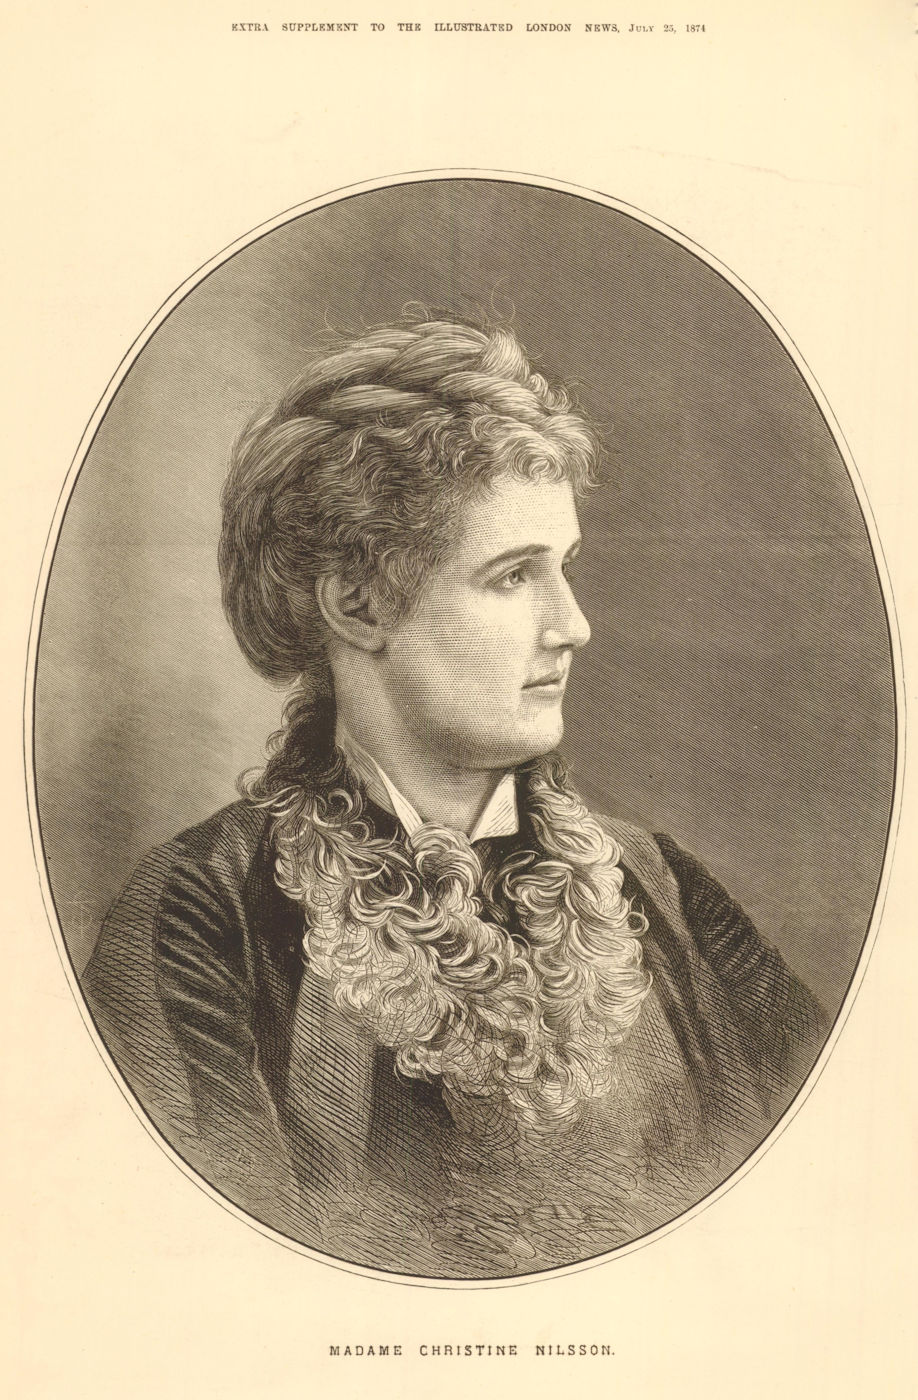 Christina Nilsson, Countess de Casa Miranda. Swedish operatic soprano 1874